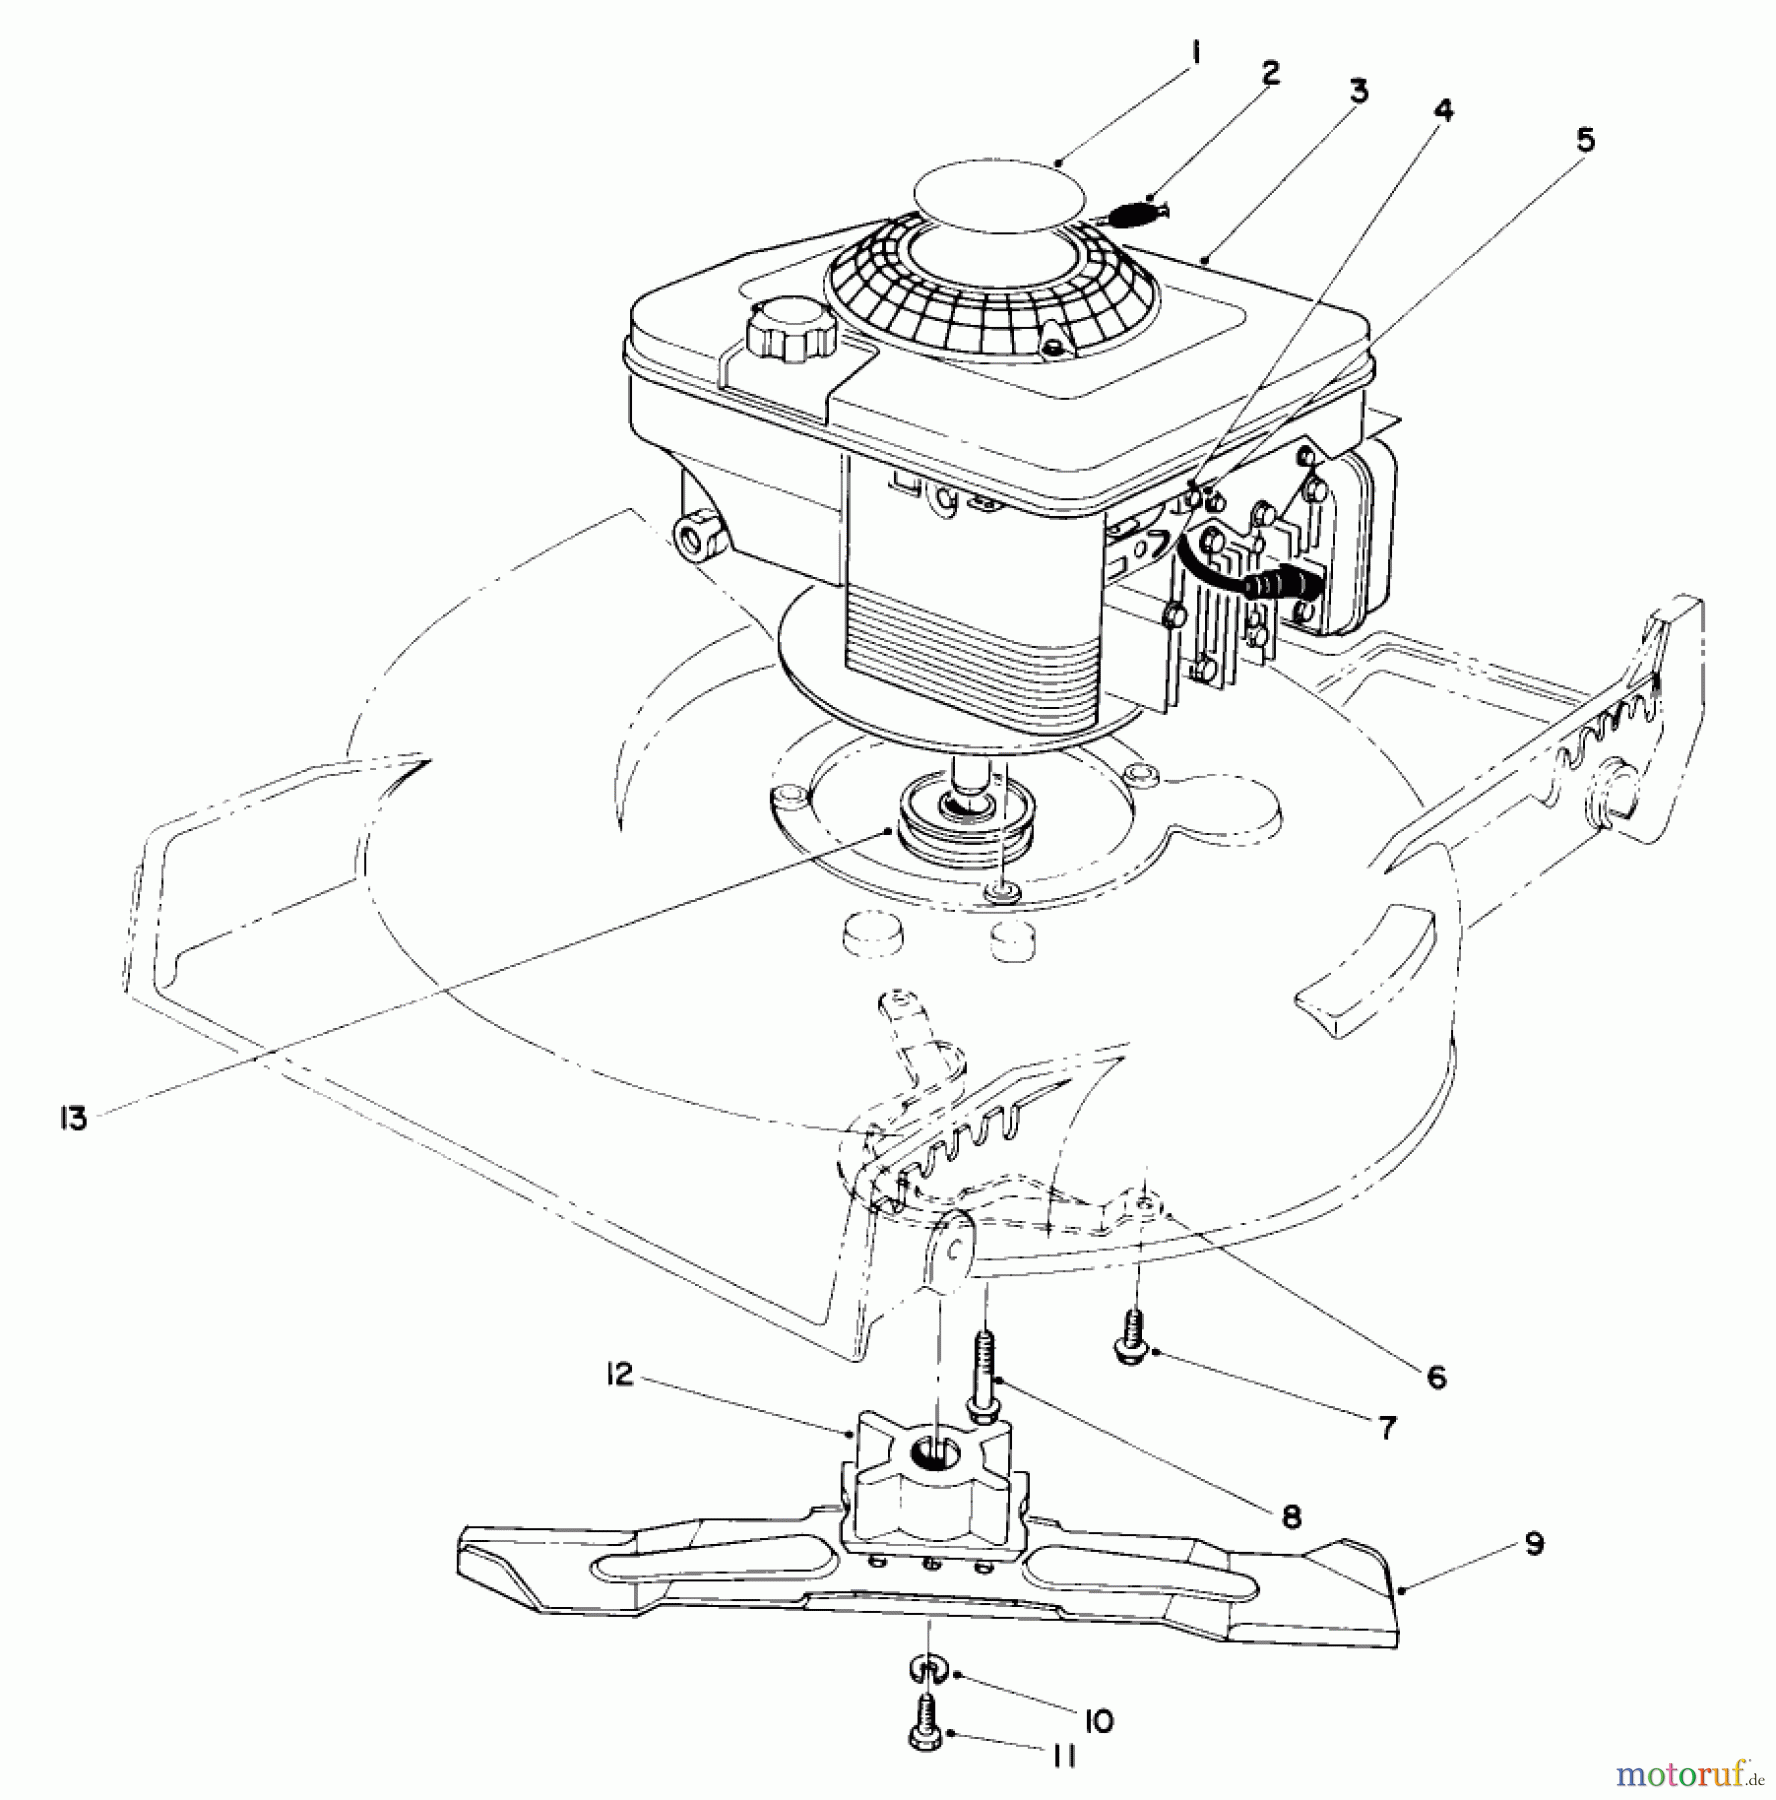  Toro Neu Mowers, Walk-Behind Seite 1 20668 - Toro Lawnmower, 1990 (0000001-0999999) ENGINE ASSEMBLY